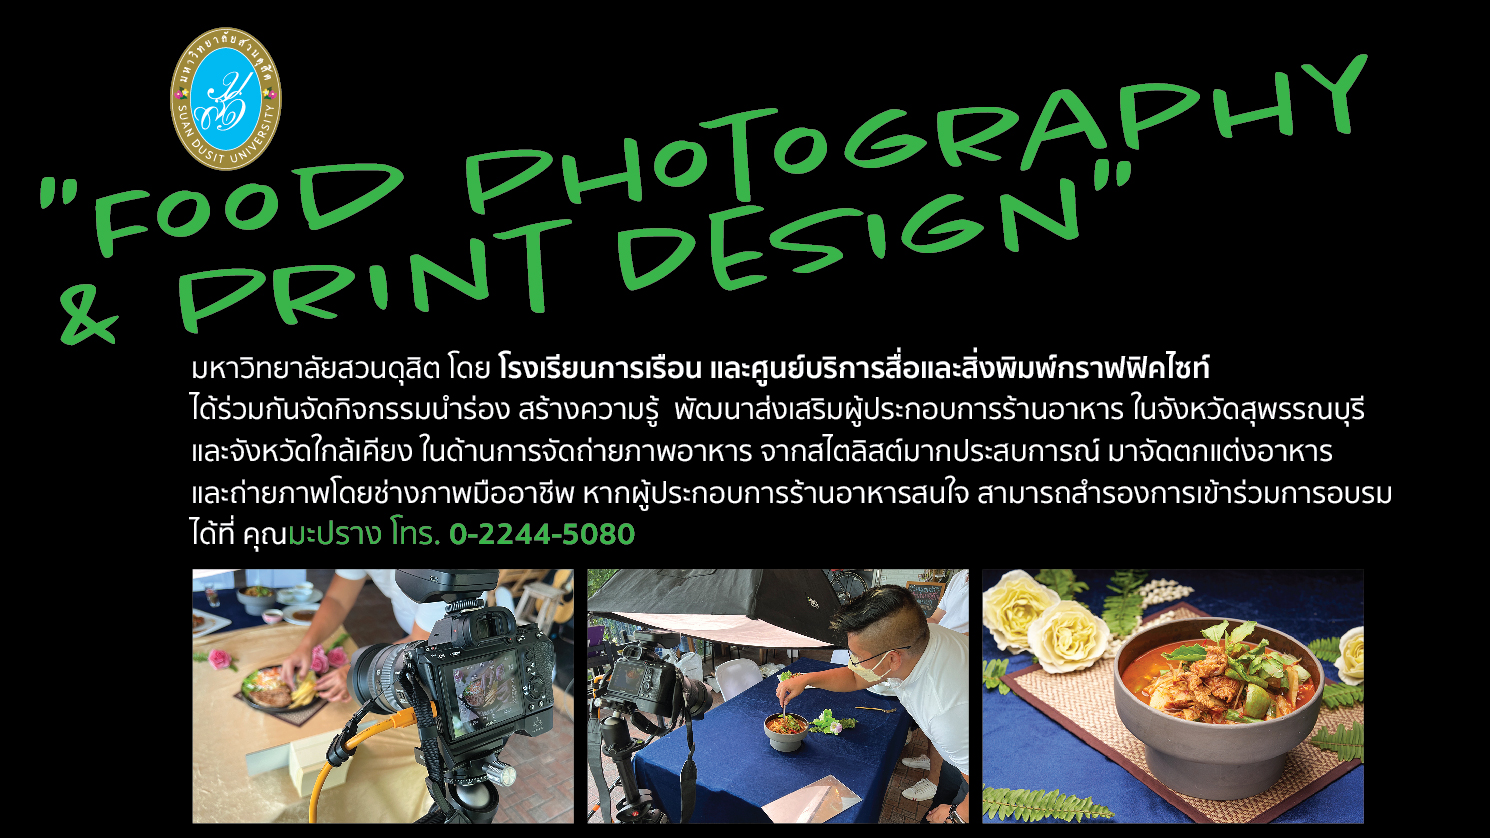 โรงเรียนการเรือน ร่วมกับศูนย์บริการสื่อและสิ่งพิมพ์กราฟฟิคไซท์ จัดกิจกรรม Food Photography & Print Design ในจังหวัดสุพรรณบุรี